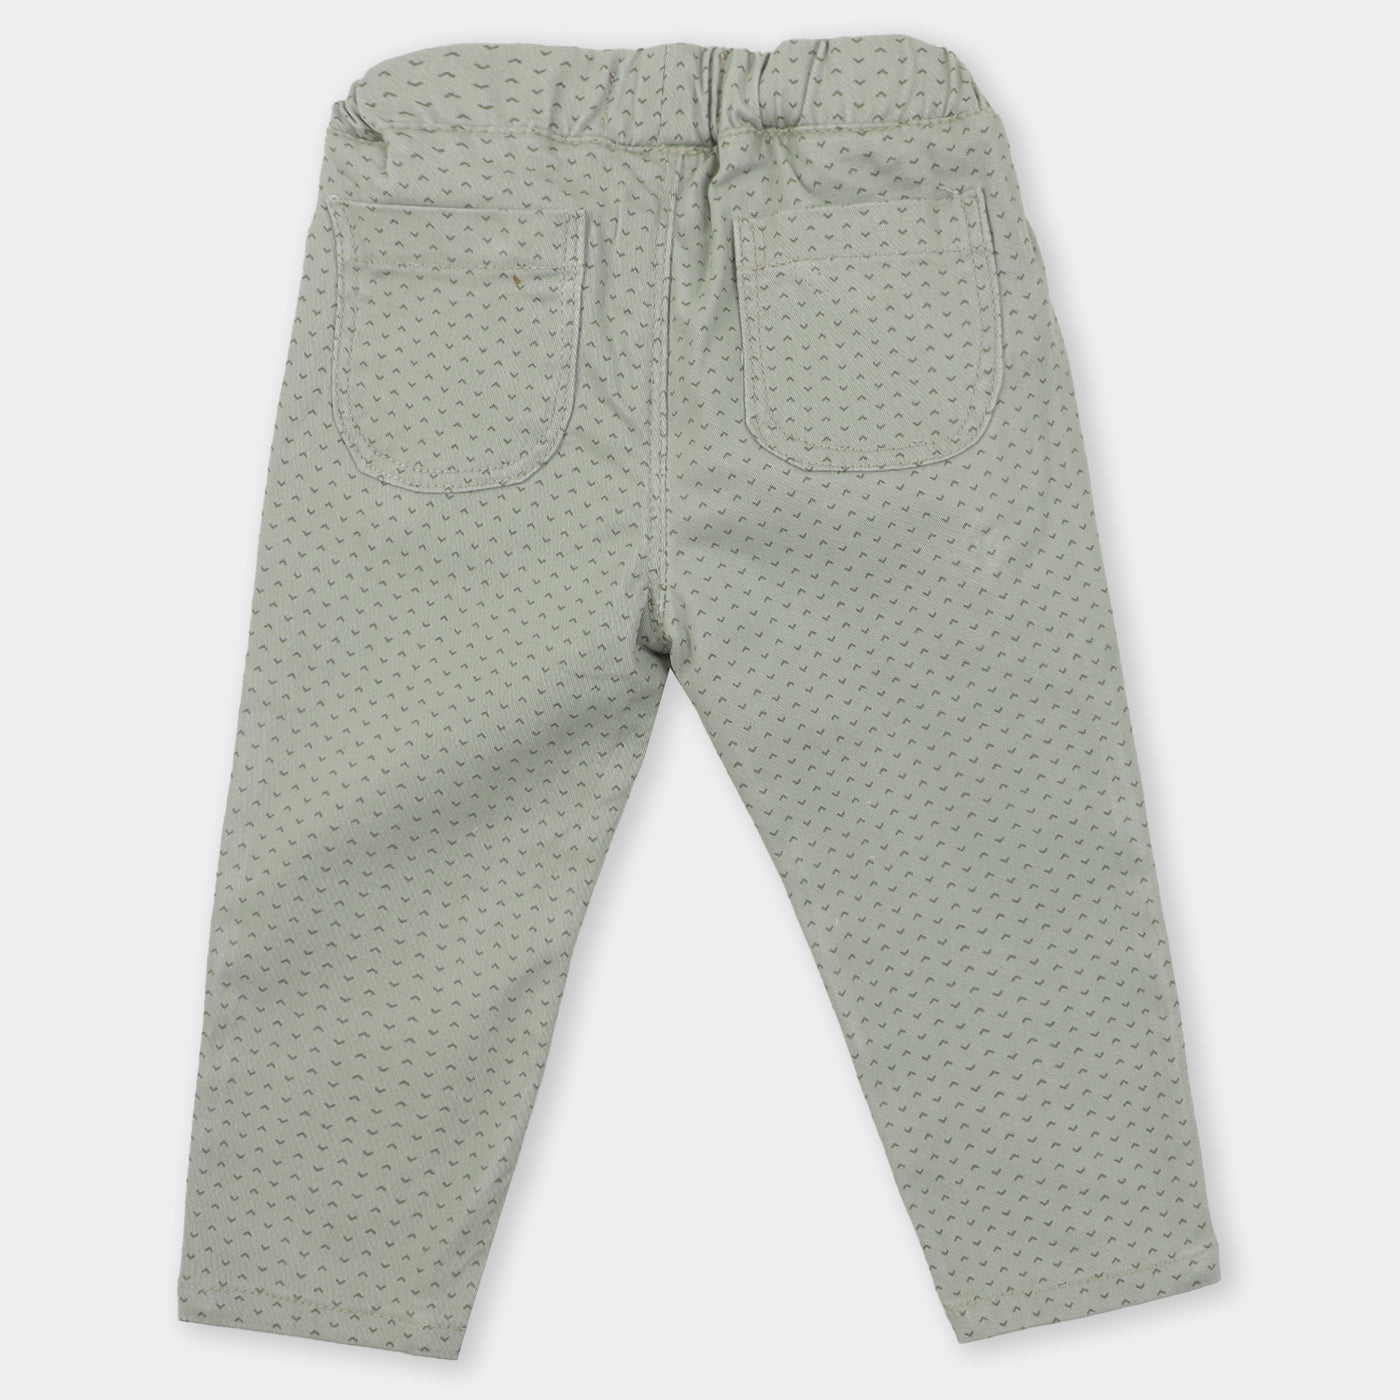 Infant Boys Pant Cotton Stylized - Light Grey